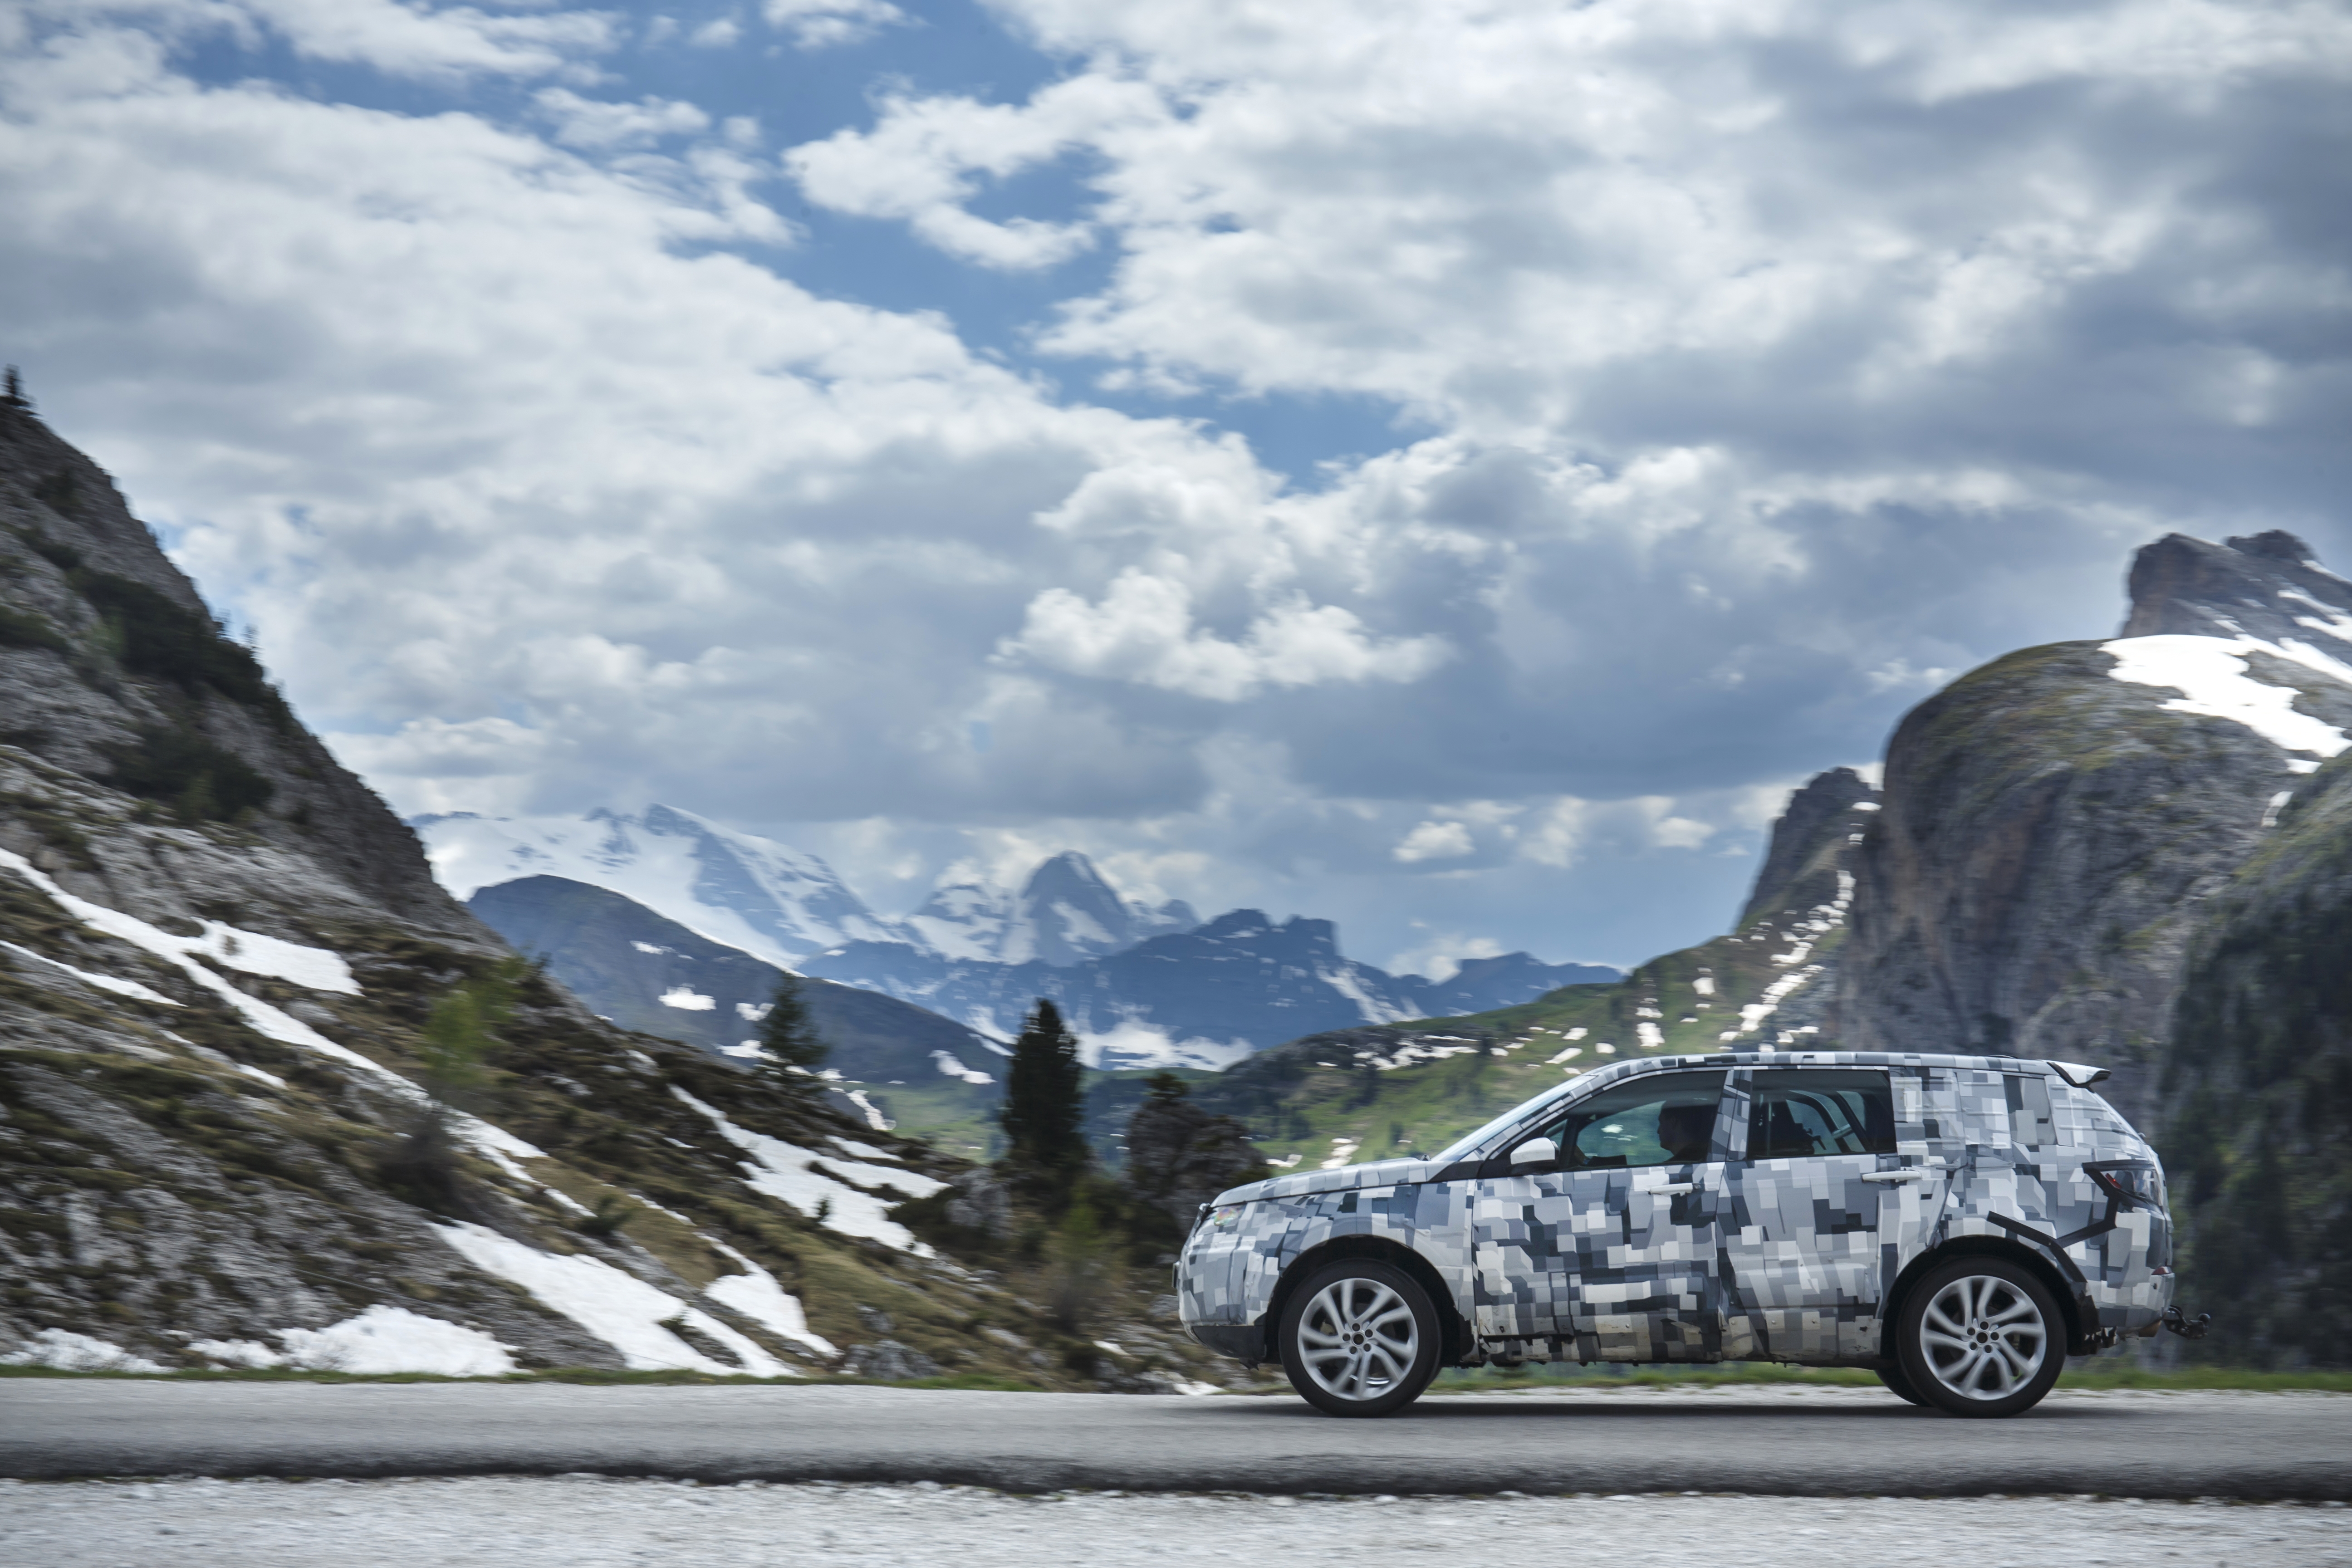  Land Rover e Virgin Galactic aprono uno scorcio sui propri programmi di test e sviluppo